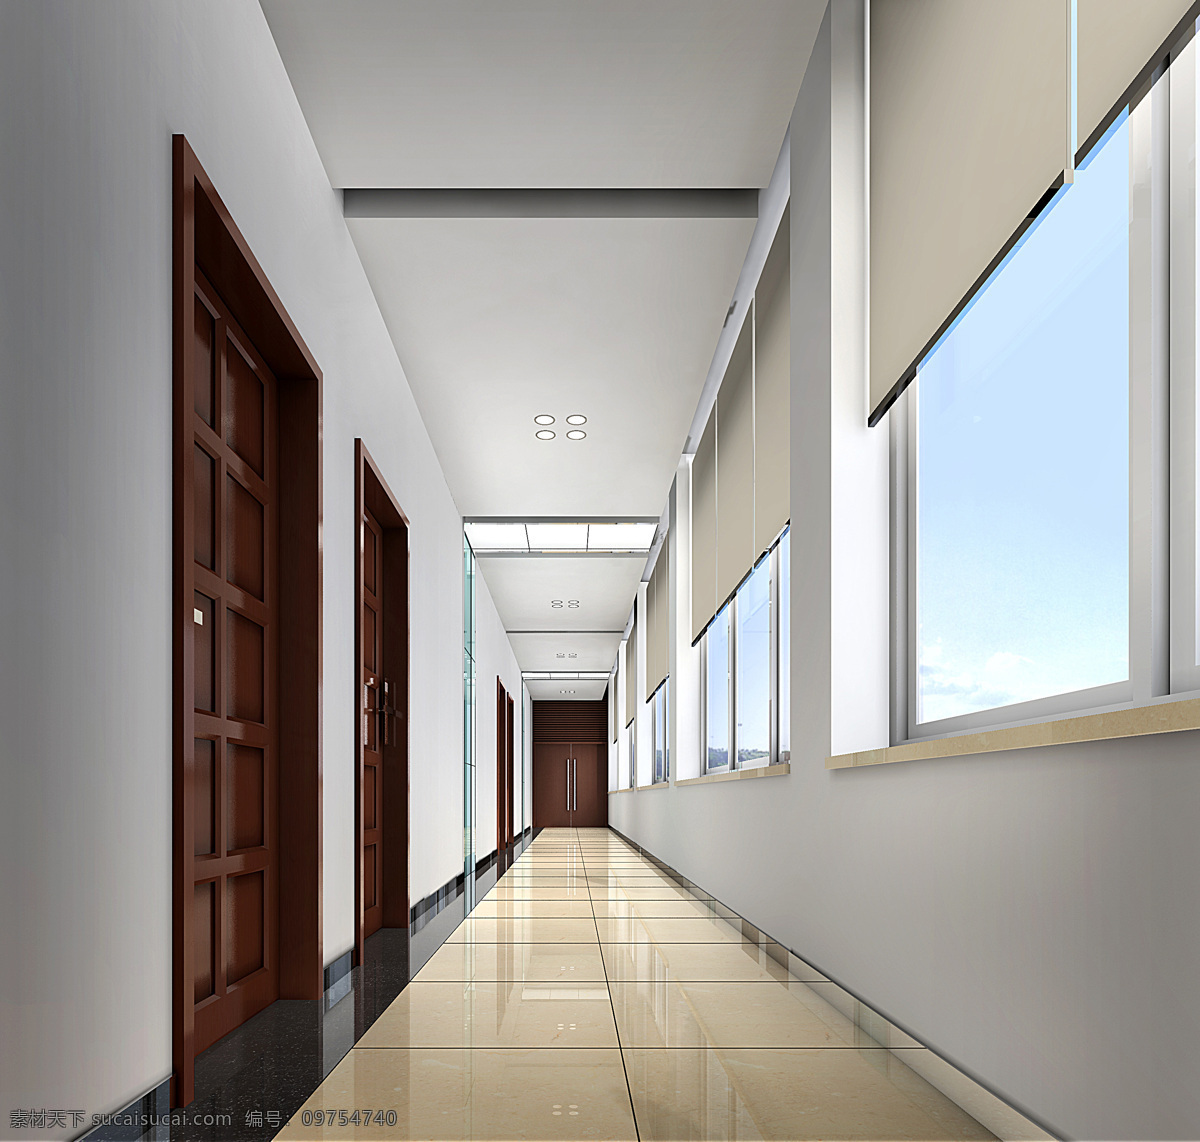 过道效果图 酒店过道 通道 走廊 效果图 设计图 装修 装潢 三维效果 装修效果图 环境设计 室内效果图 3d设计